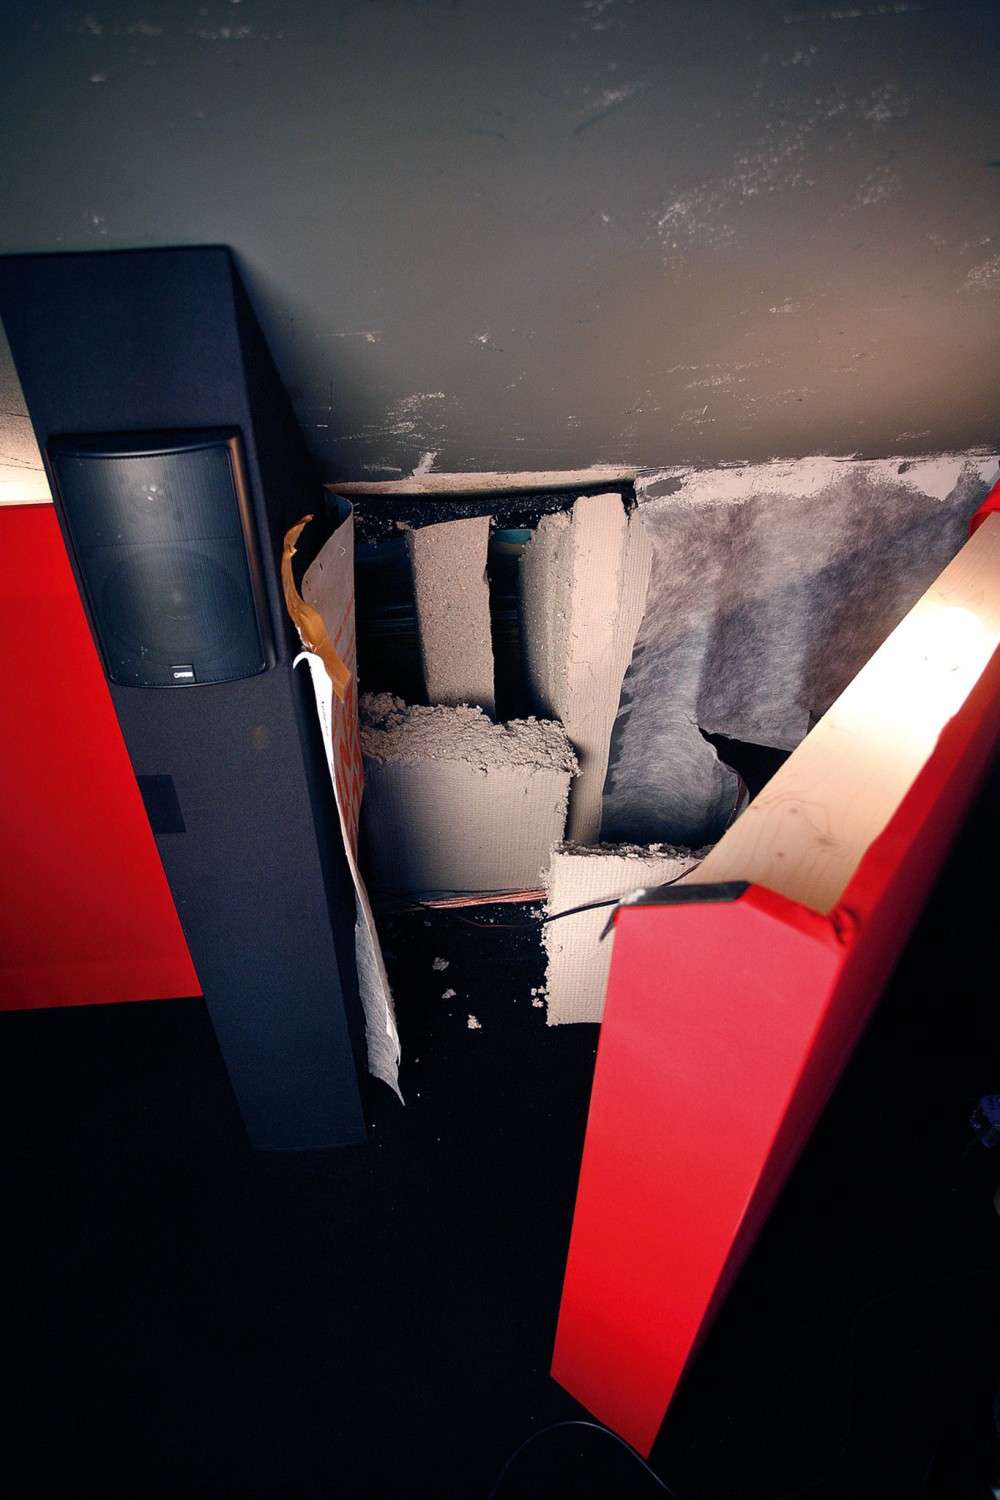 Ratgeber Nice Surprise: 3D-Dachbodenkino mit Suchtfaktor, ein Klanghammer - News, Bild 7